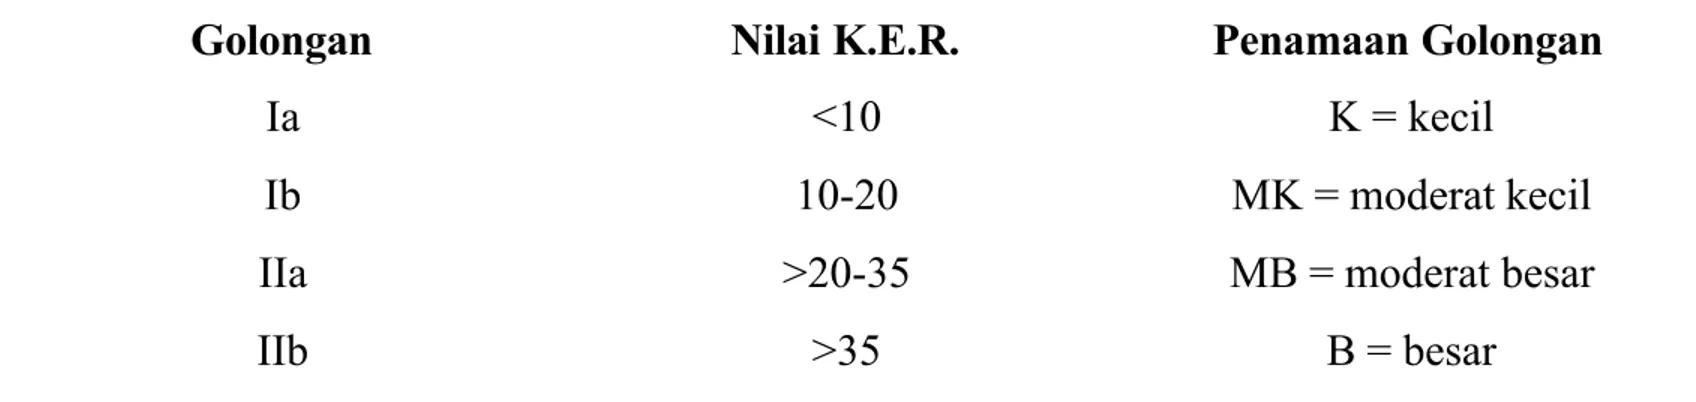 Tabel 4. Penggolongan menurut K.E.R.